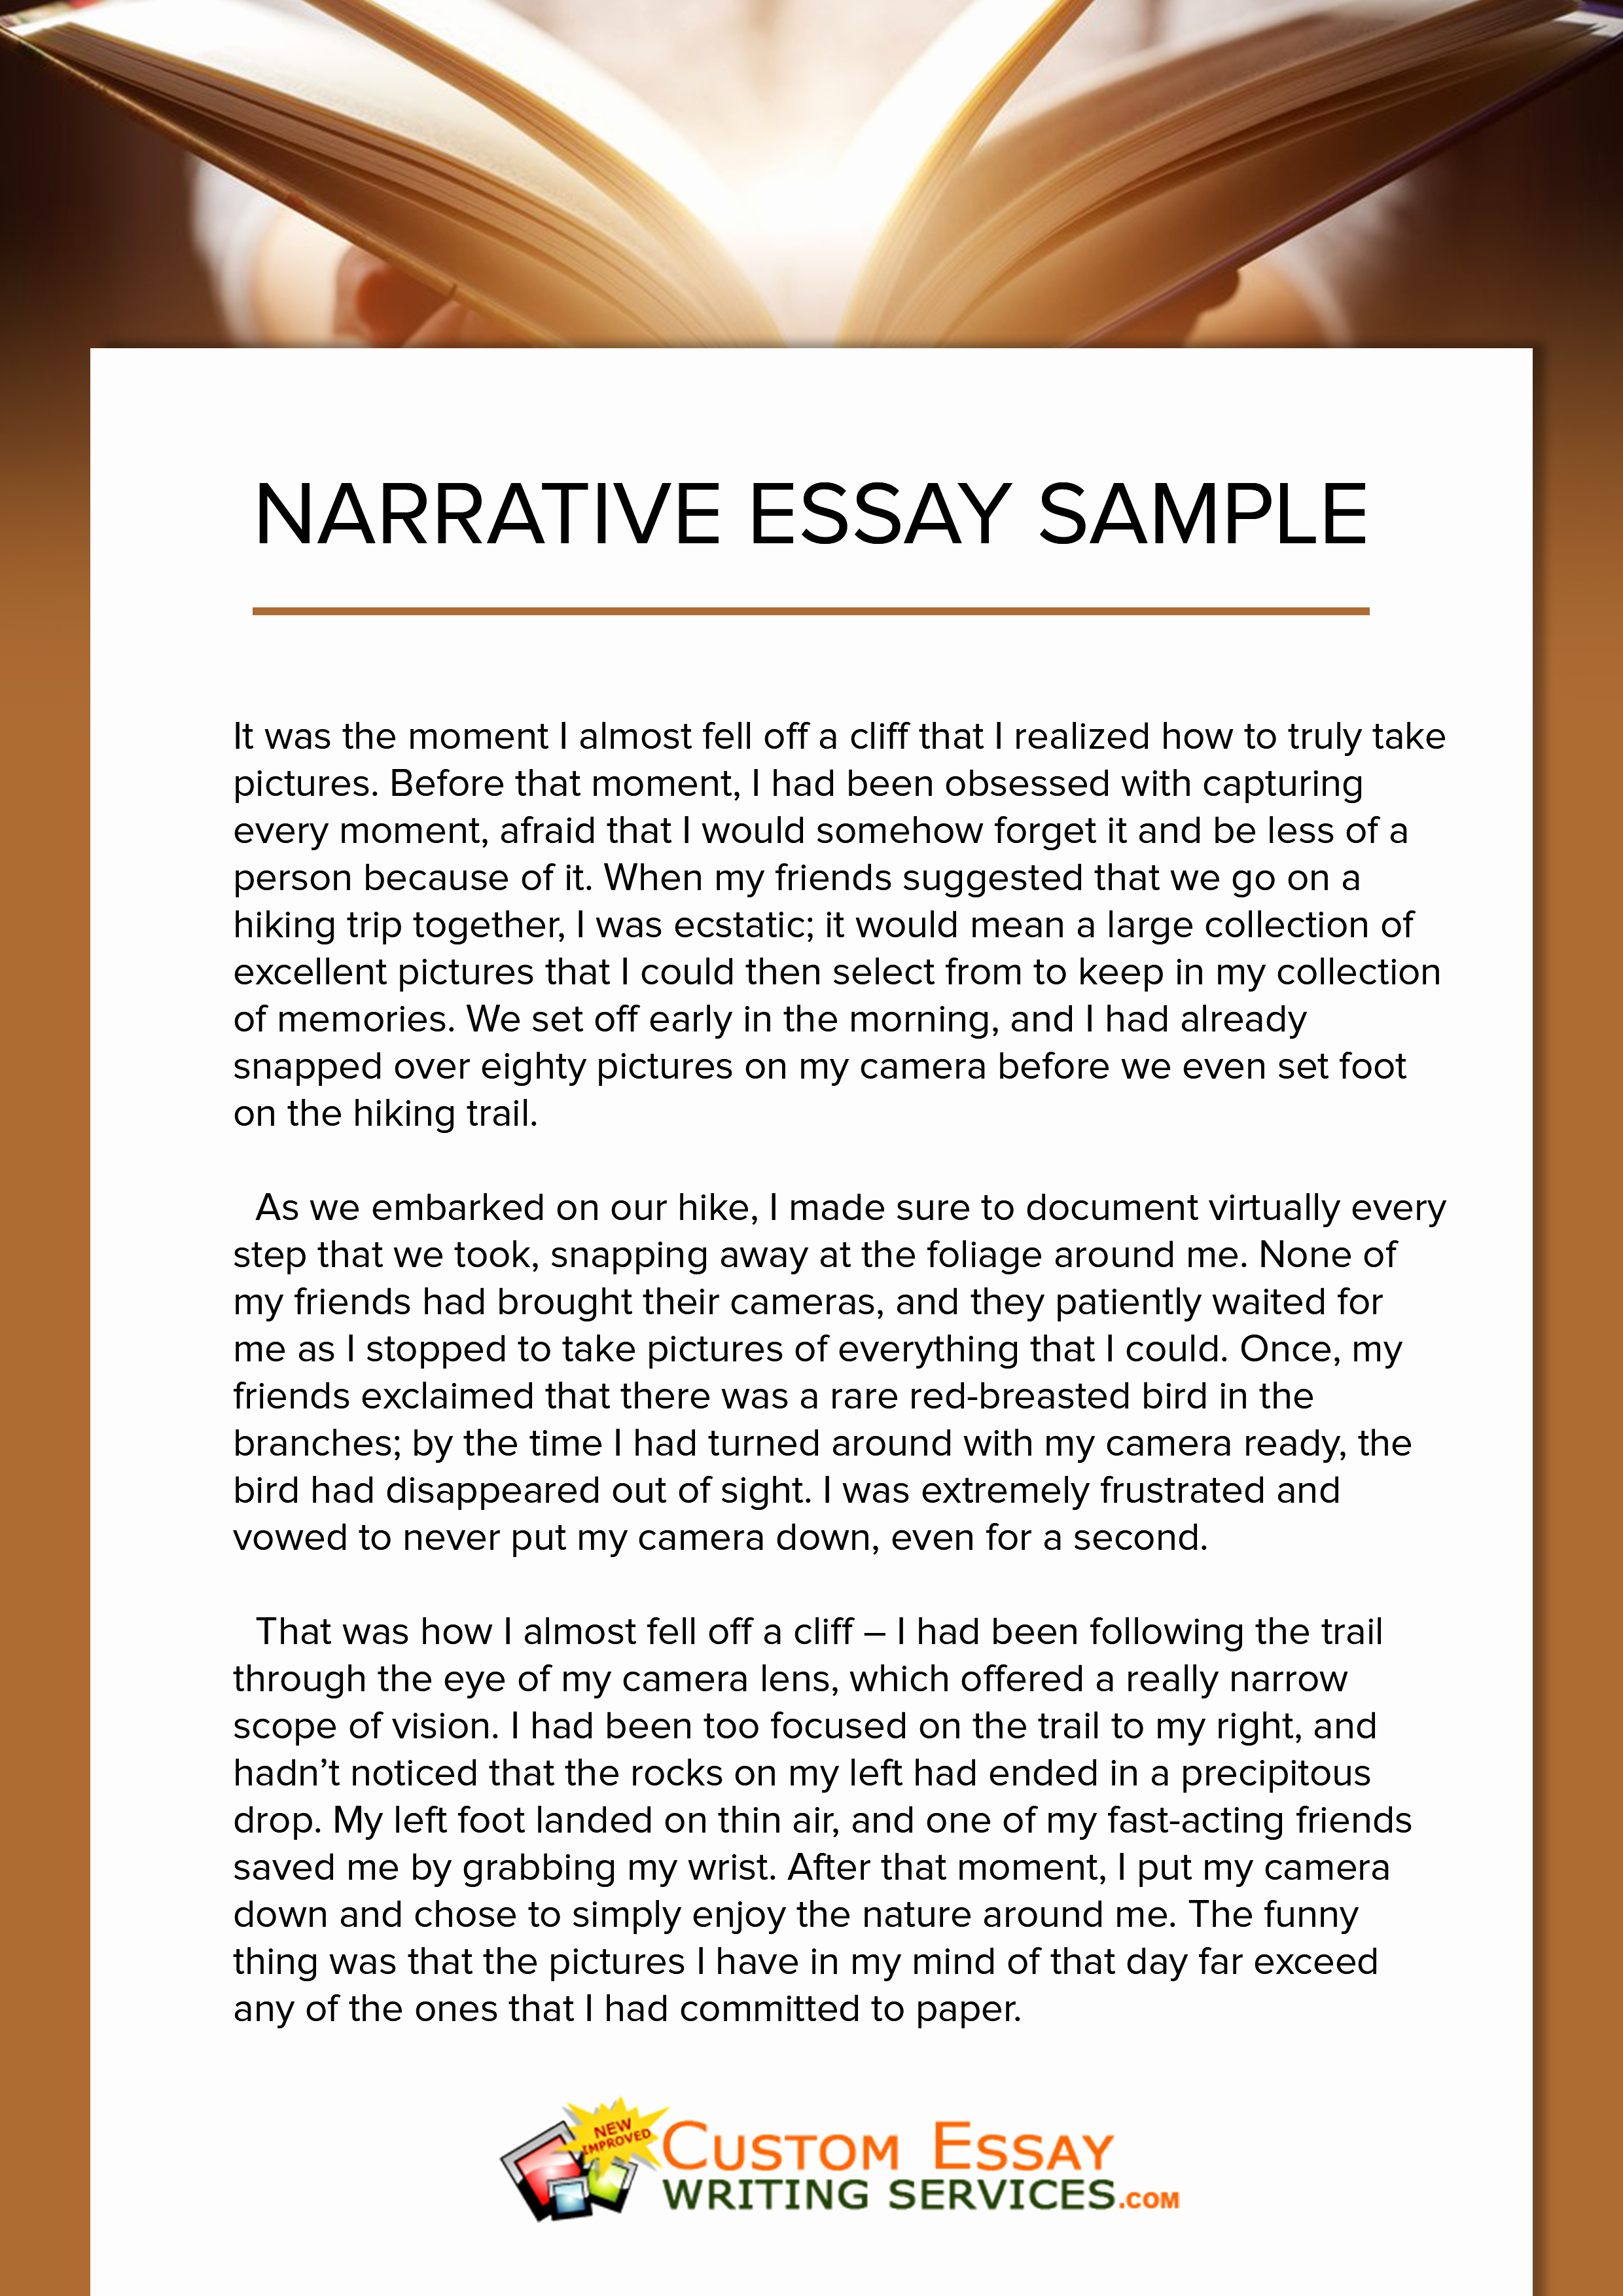 revising a personal narrative essay